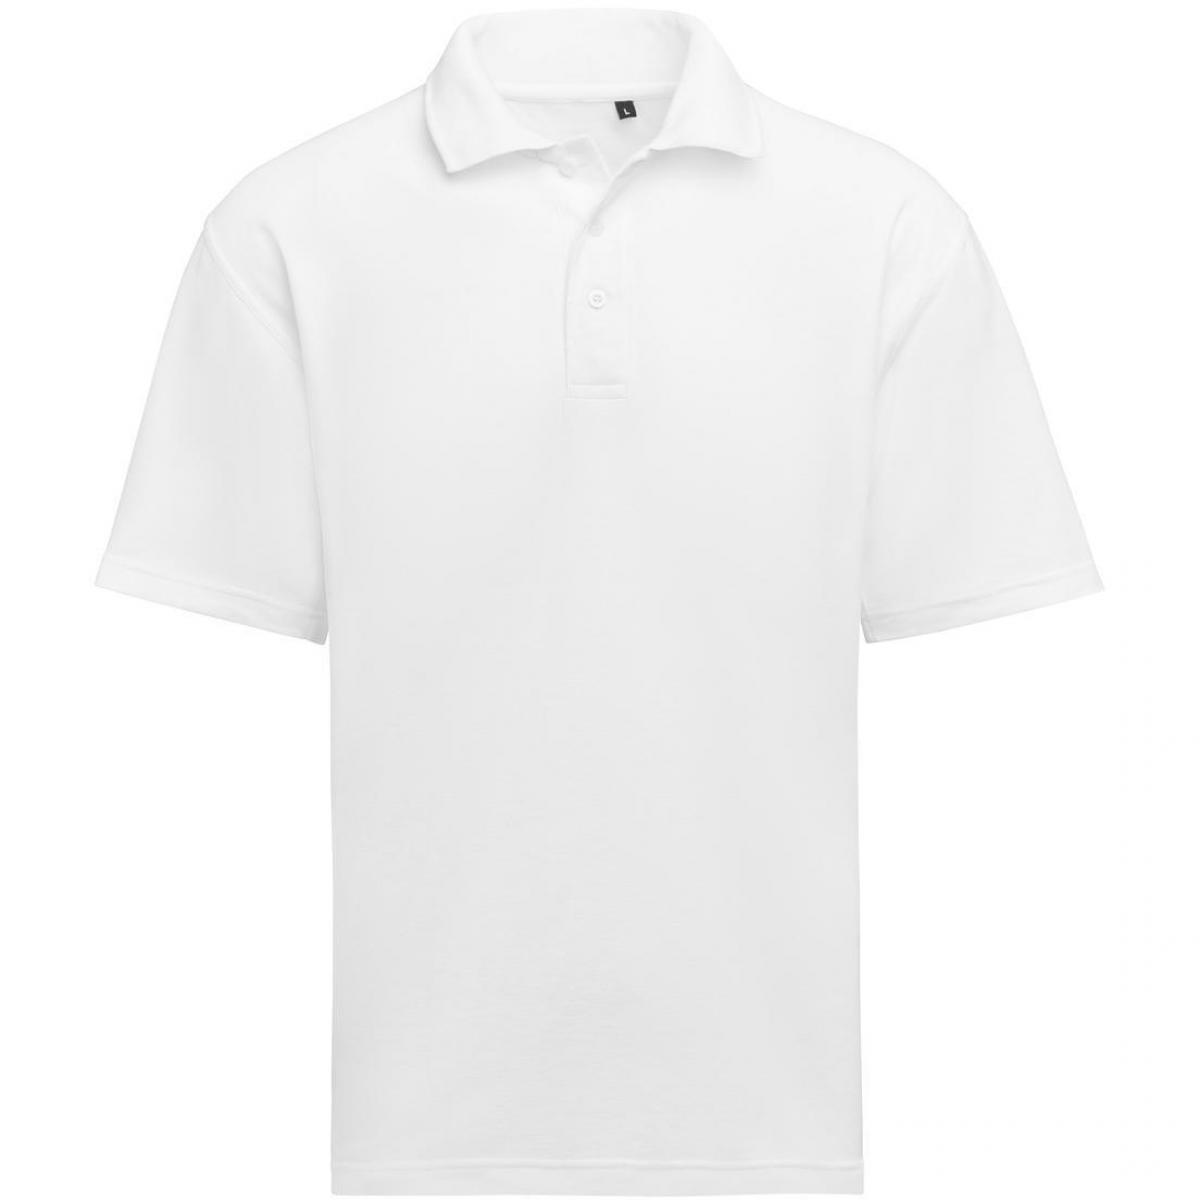 Hersteller: SG Herstellernummer: SGE501 Artikelbezeichnung: Unisex Poloshirt - Workwear - 60°C waschbar Farbe: White